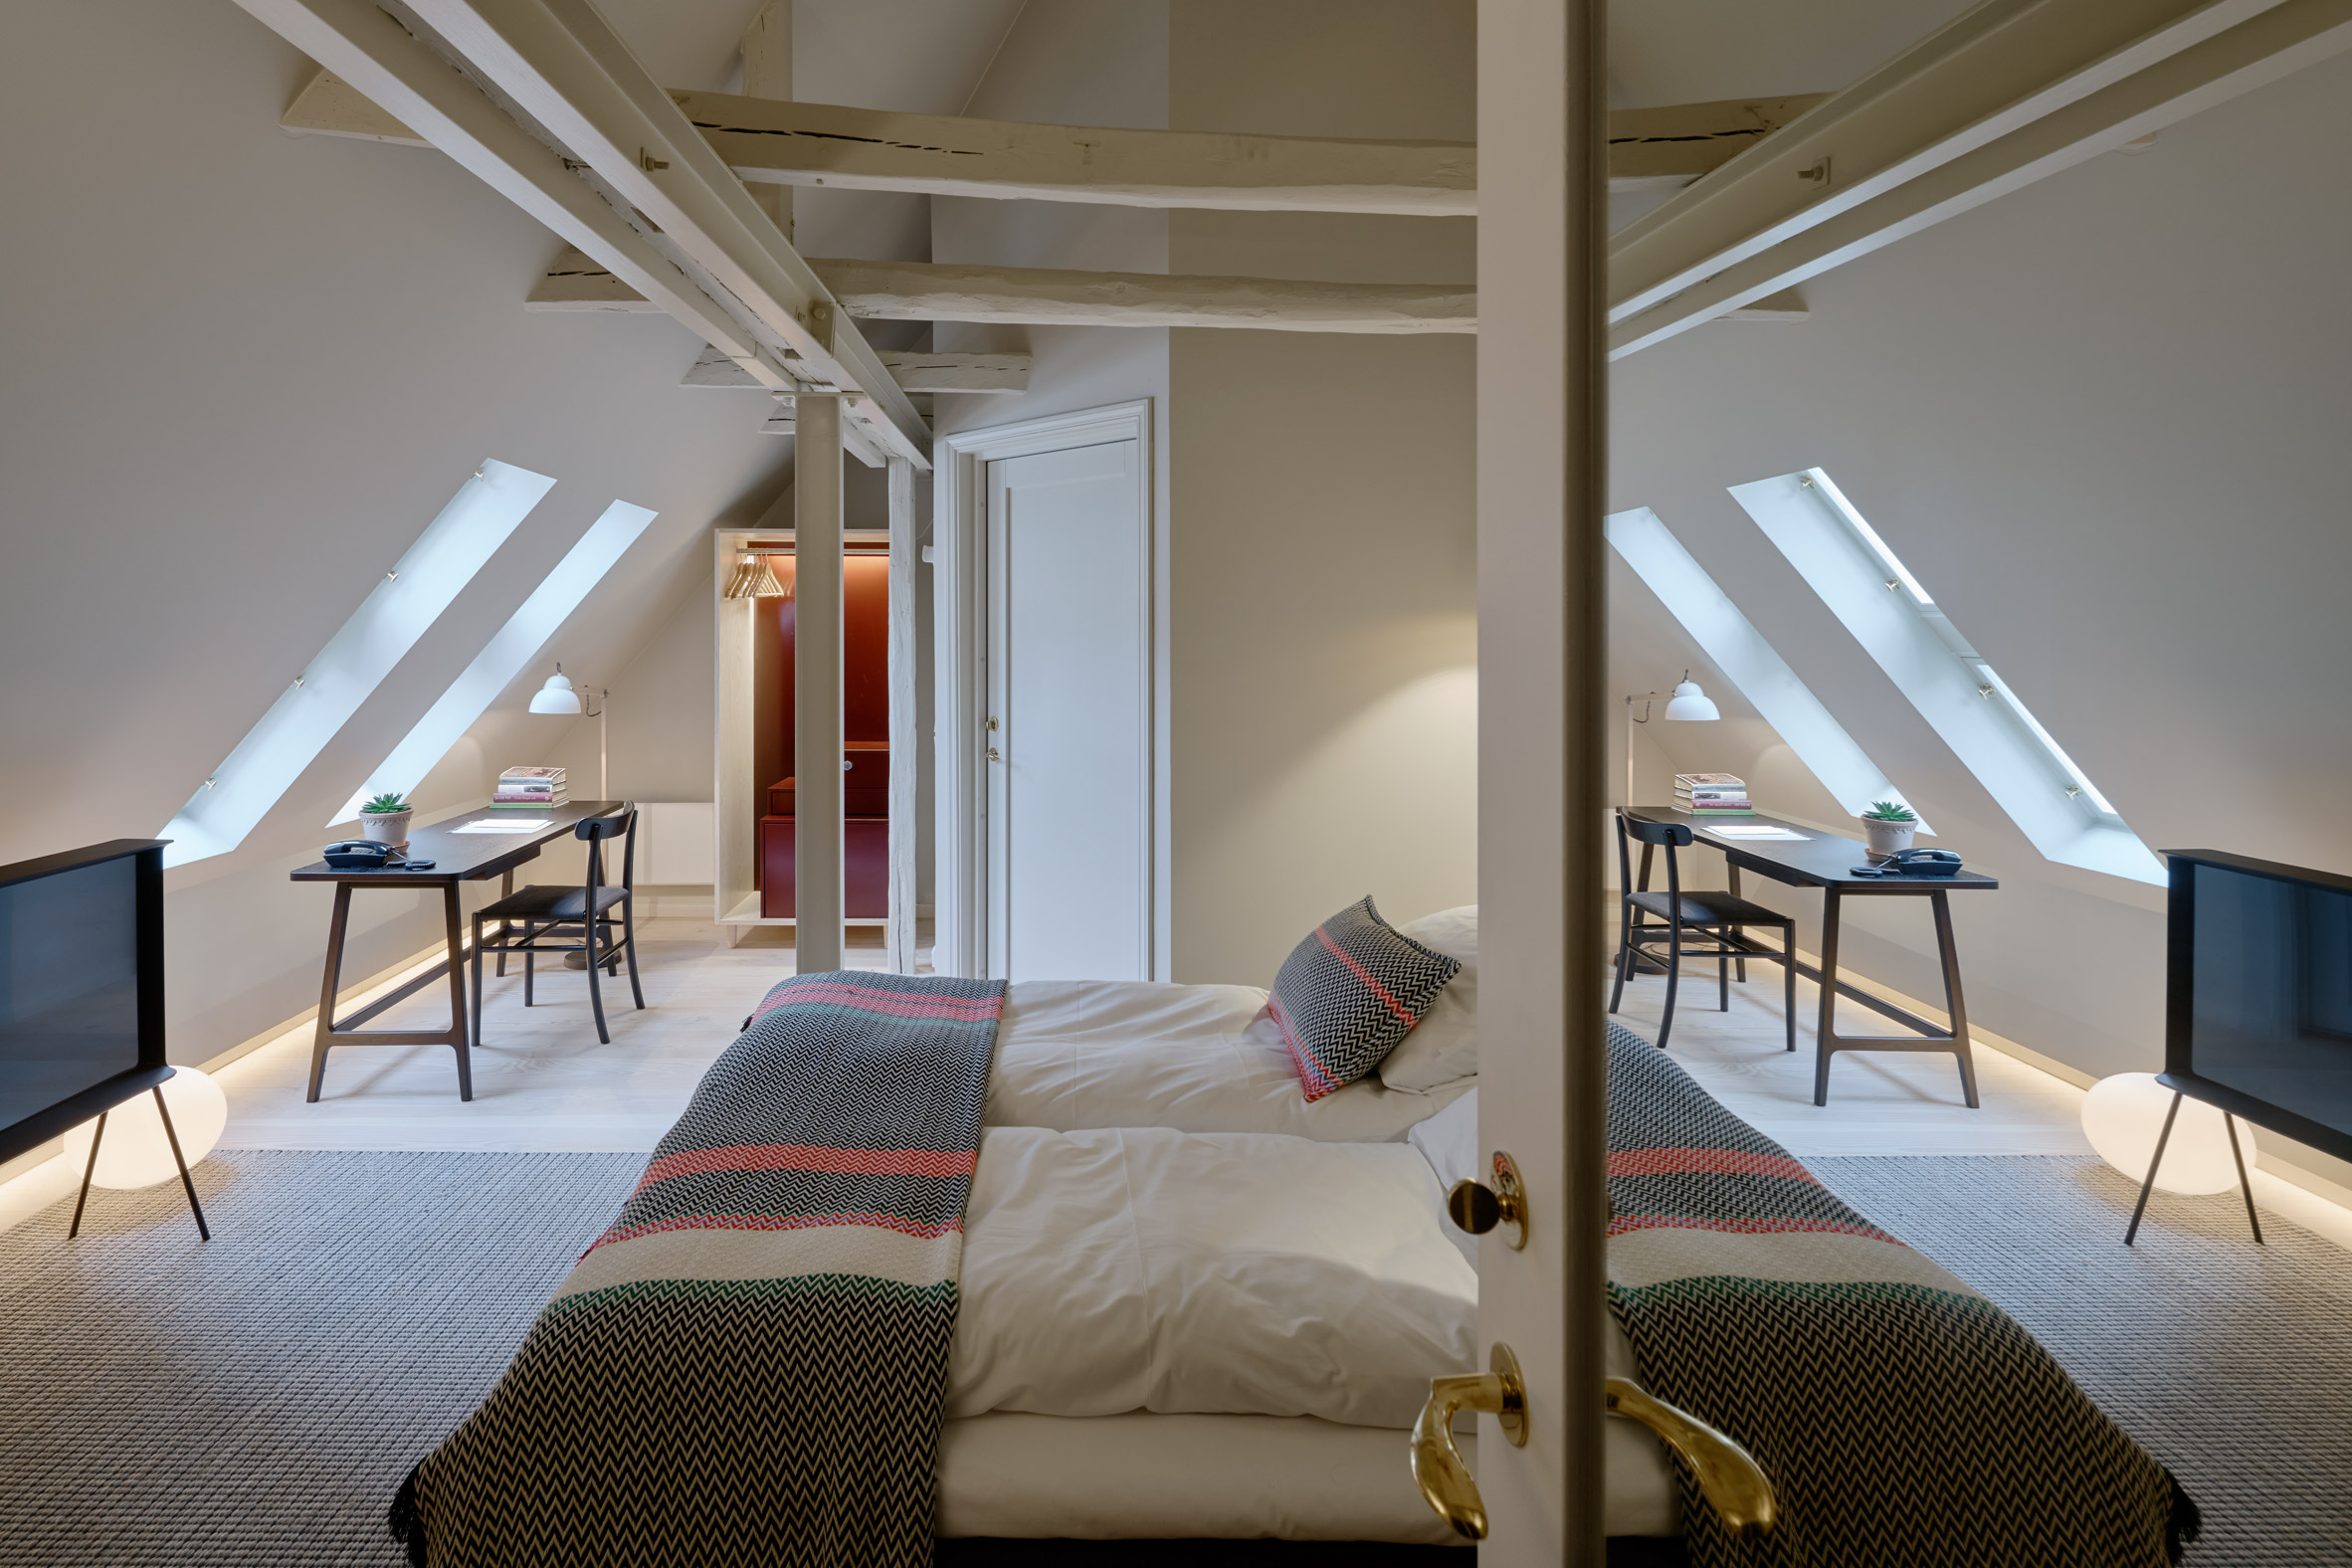 Villa Terminus hotel n Bergen by Claesson Koivisto Rune